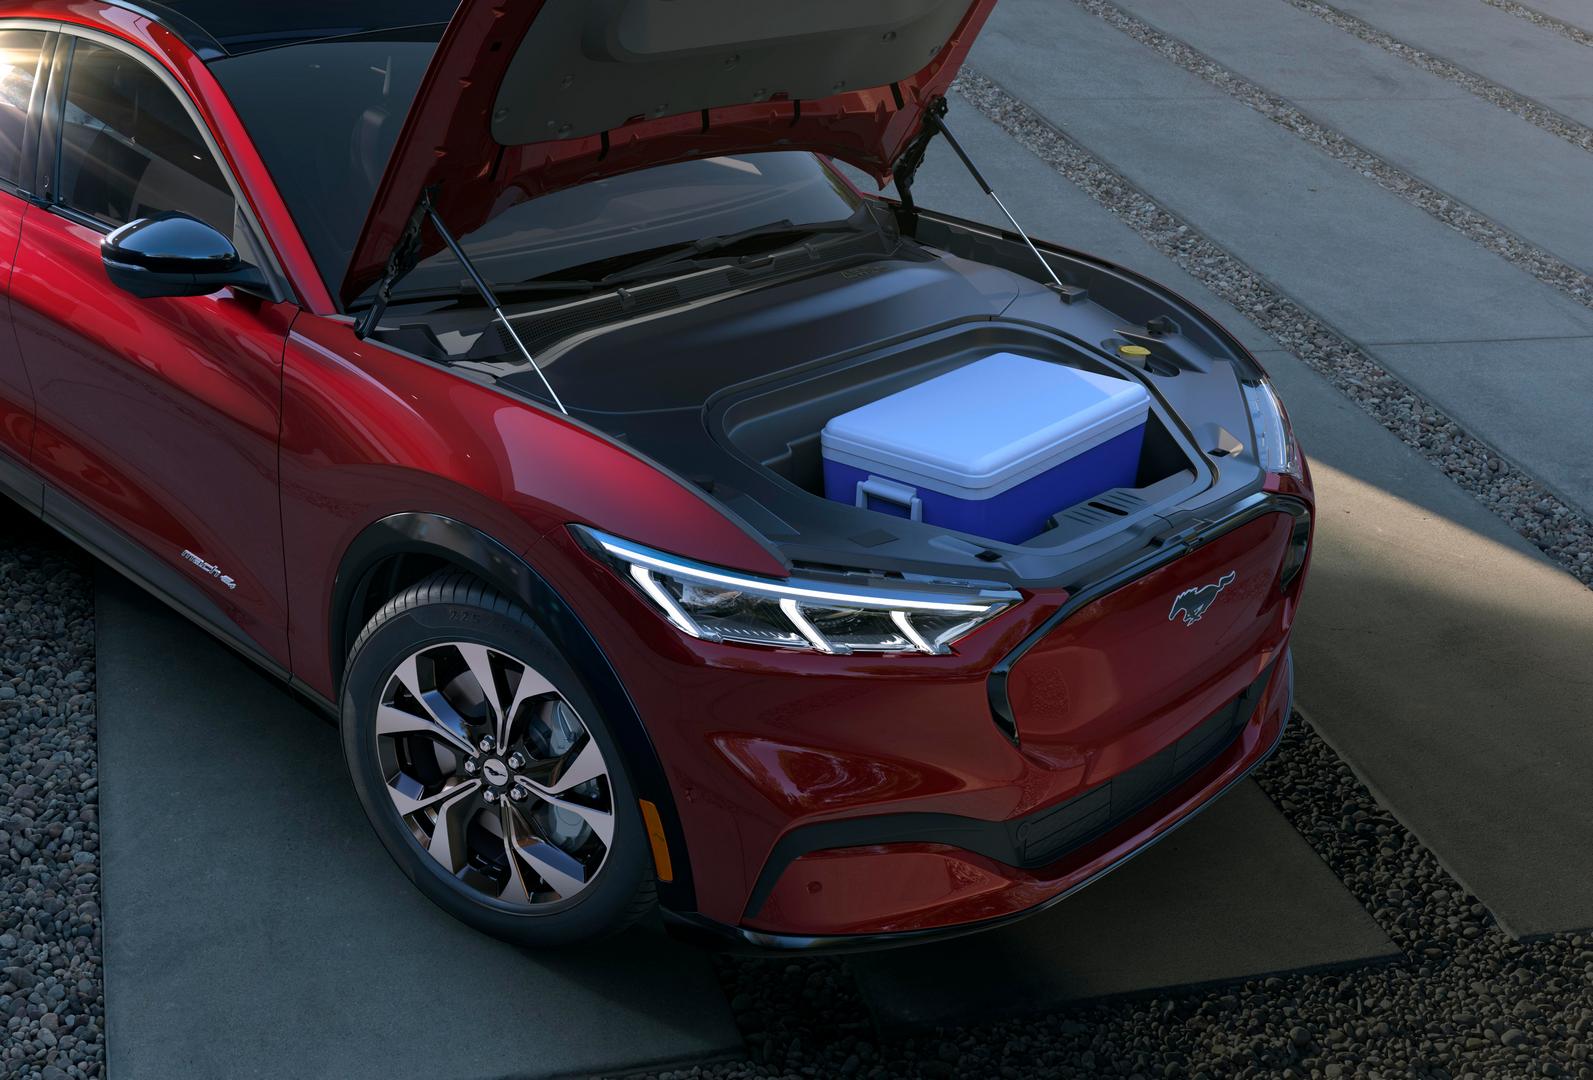 Ford предложит звуковую систему Bang&Olufsen. В качестве опции предлагается панорамная стеклянная крыша со специальным стеклянным покрытием для усиления защиты от инфракрасного излучения.